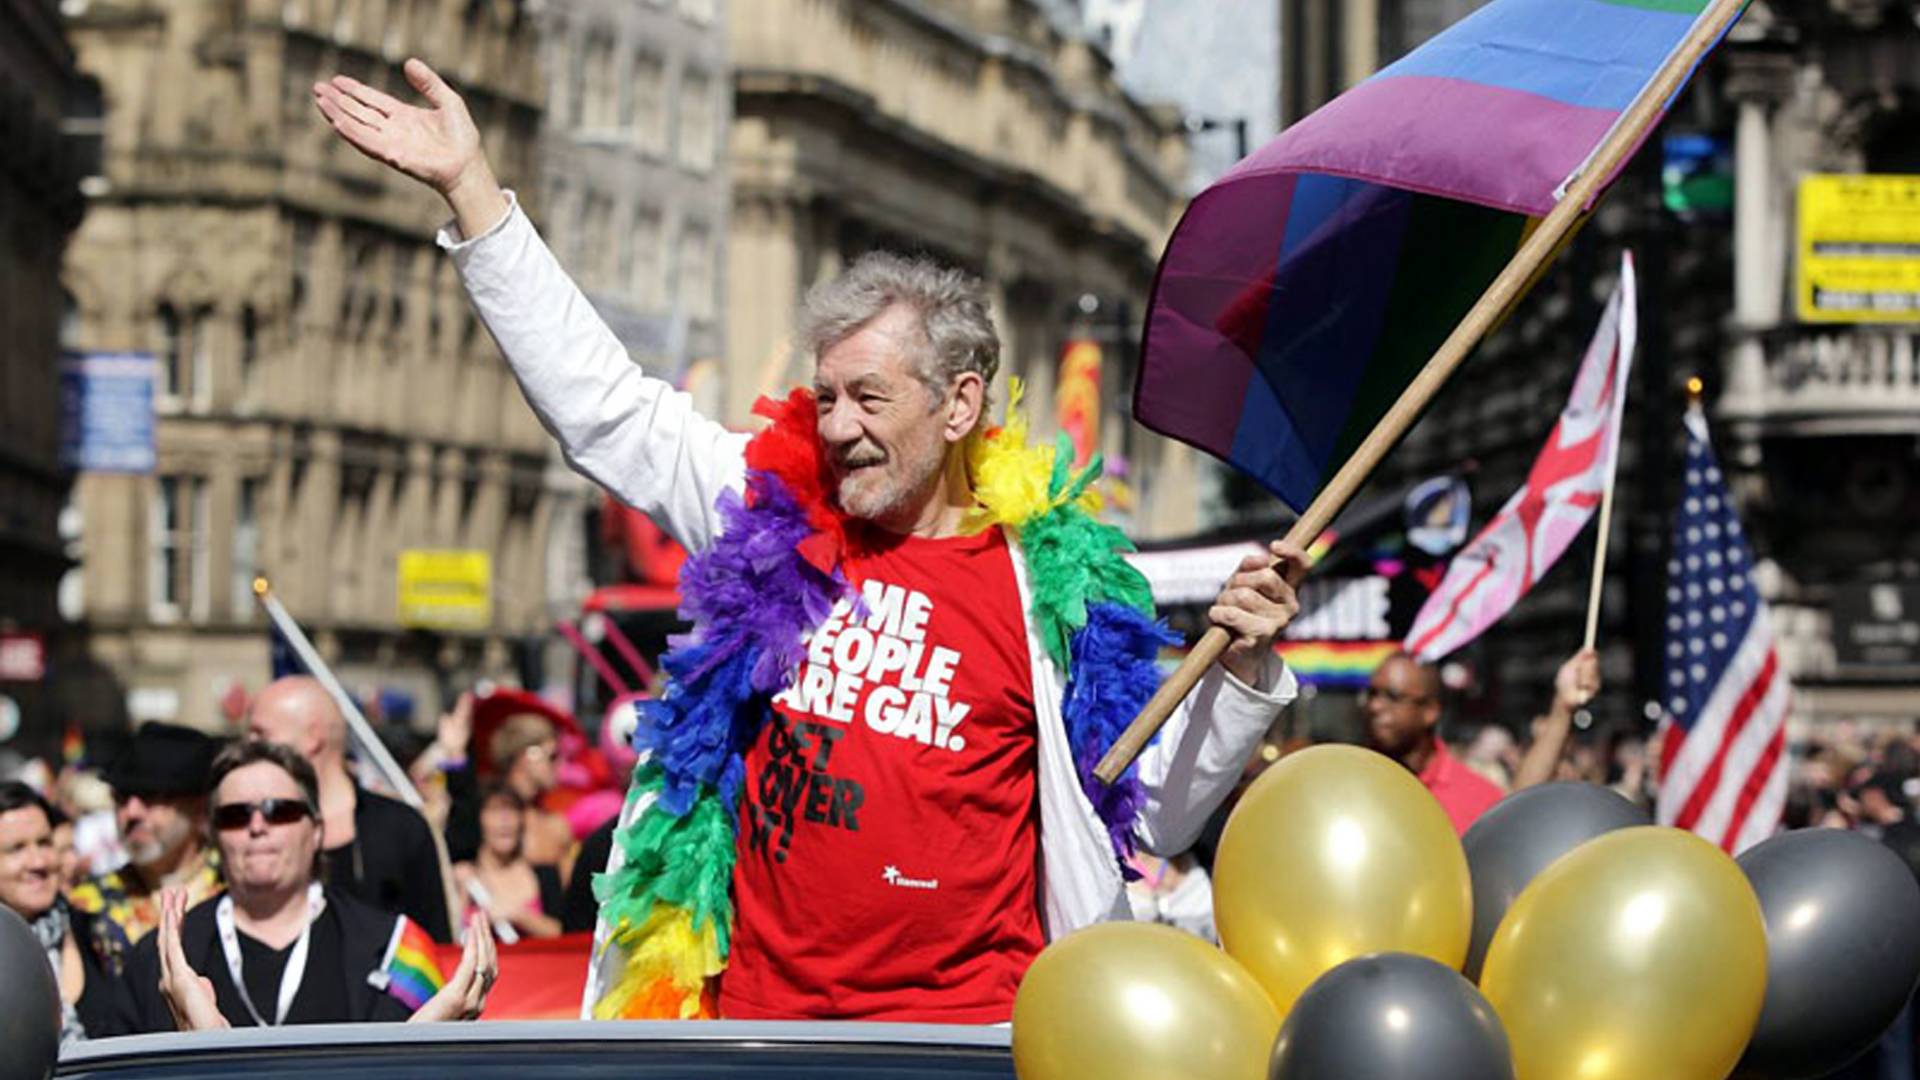 Ian McKellen: kiedy pierwszy Oscar dla homoseksualisty?